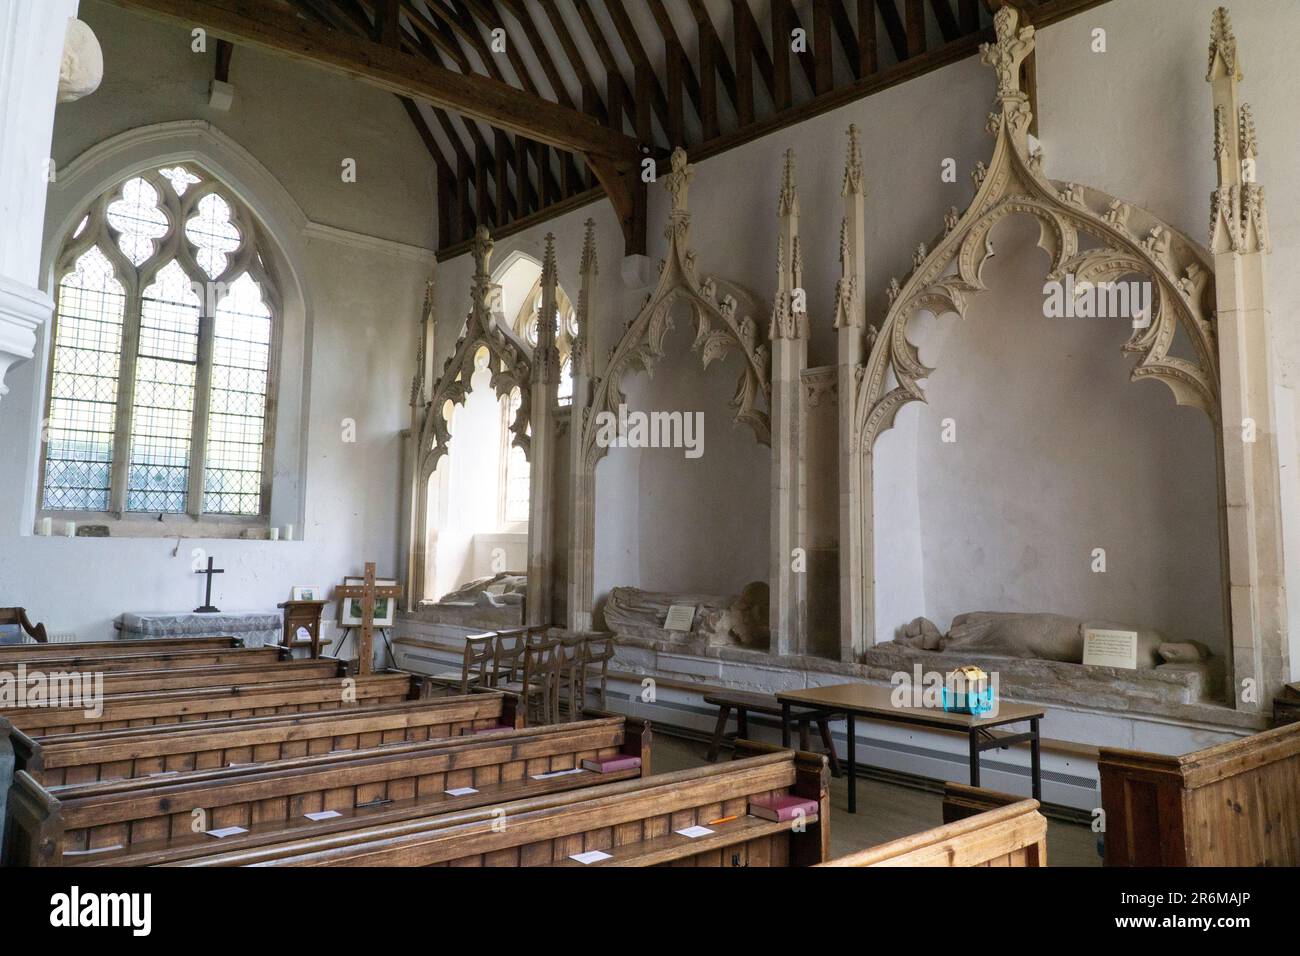 L'église historique de St Mary's à Aldworth, Berkshire. L'église construite en silex dans un petit village abrite les tombes de plusieurs membres de t Banque D'Images